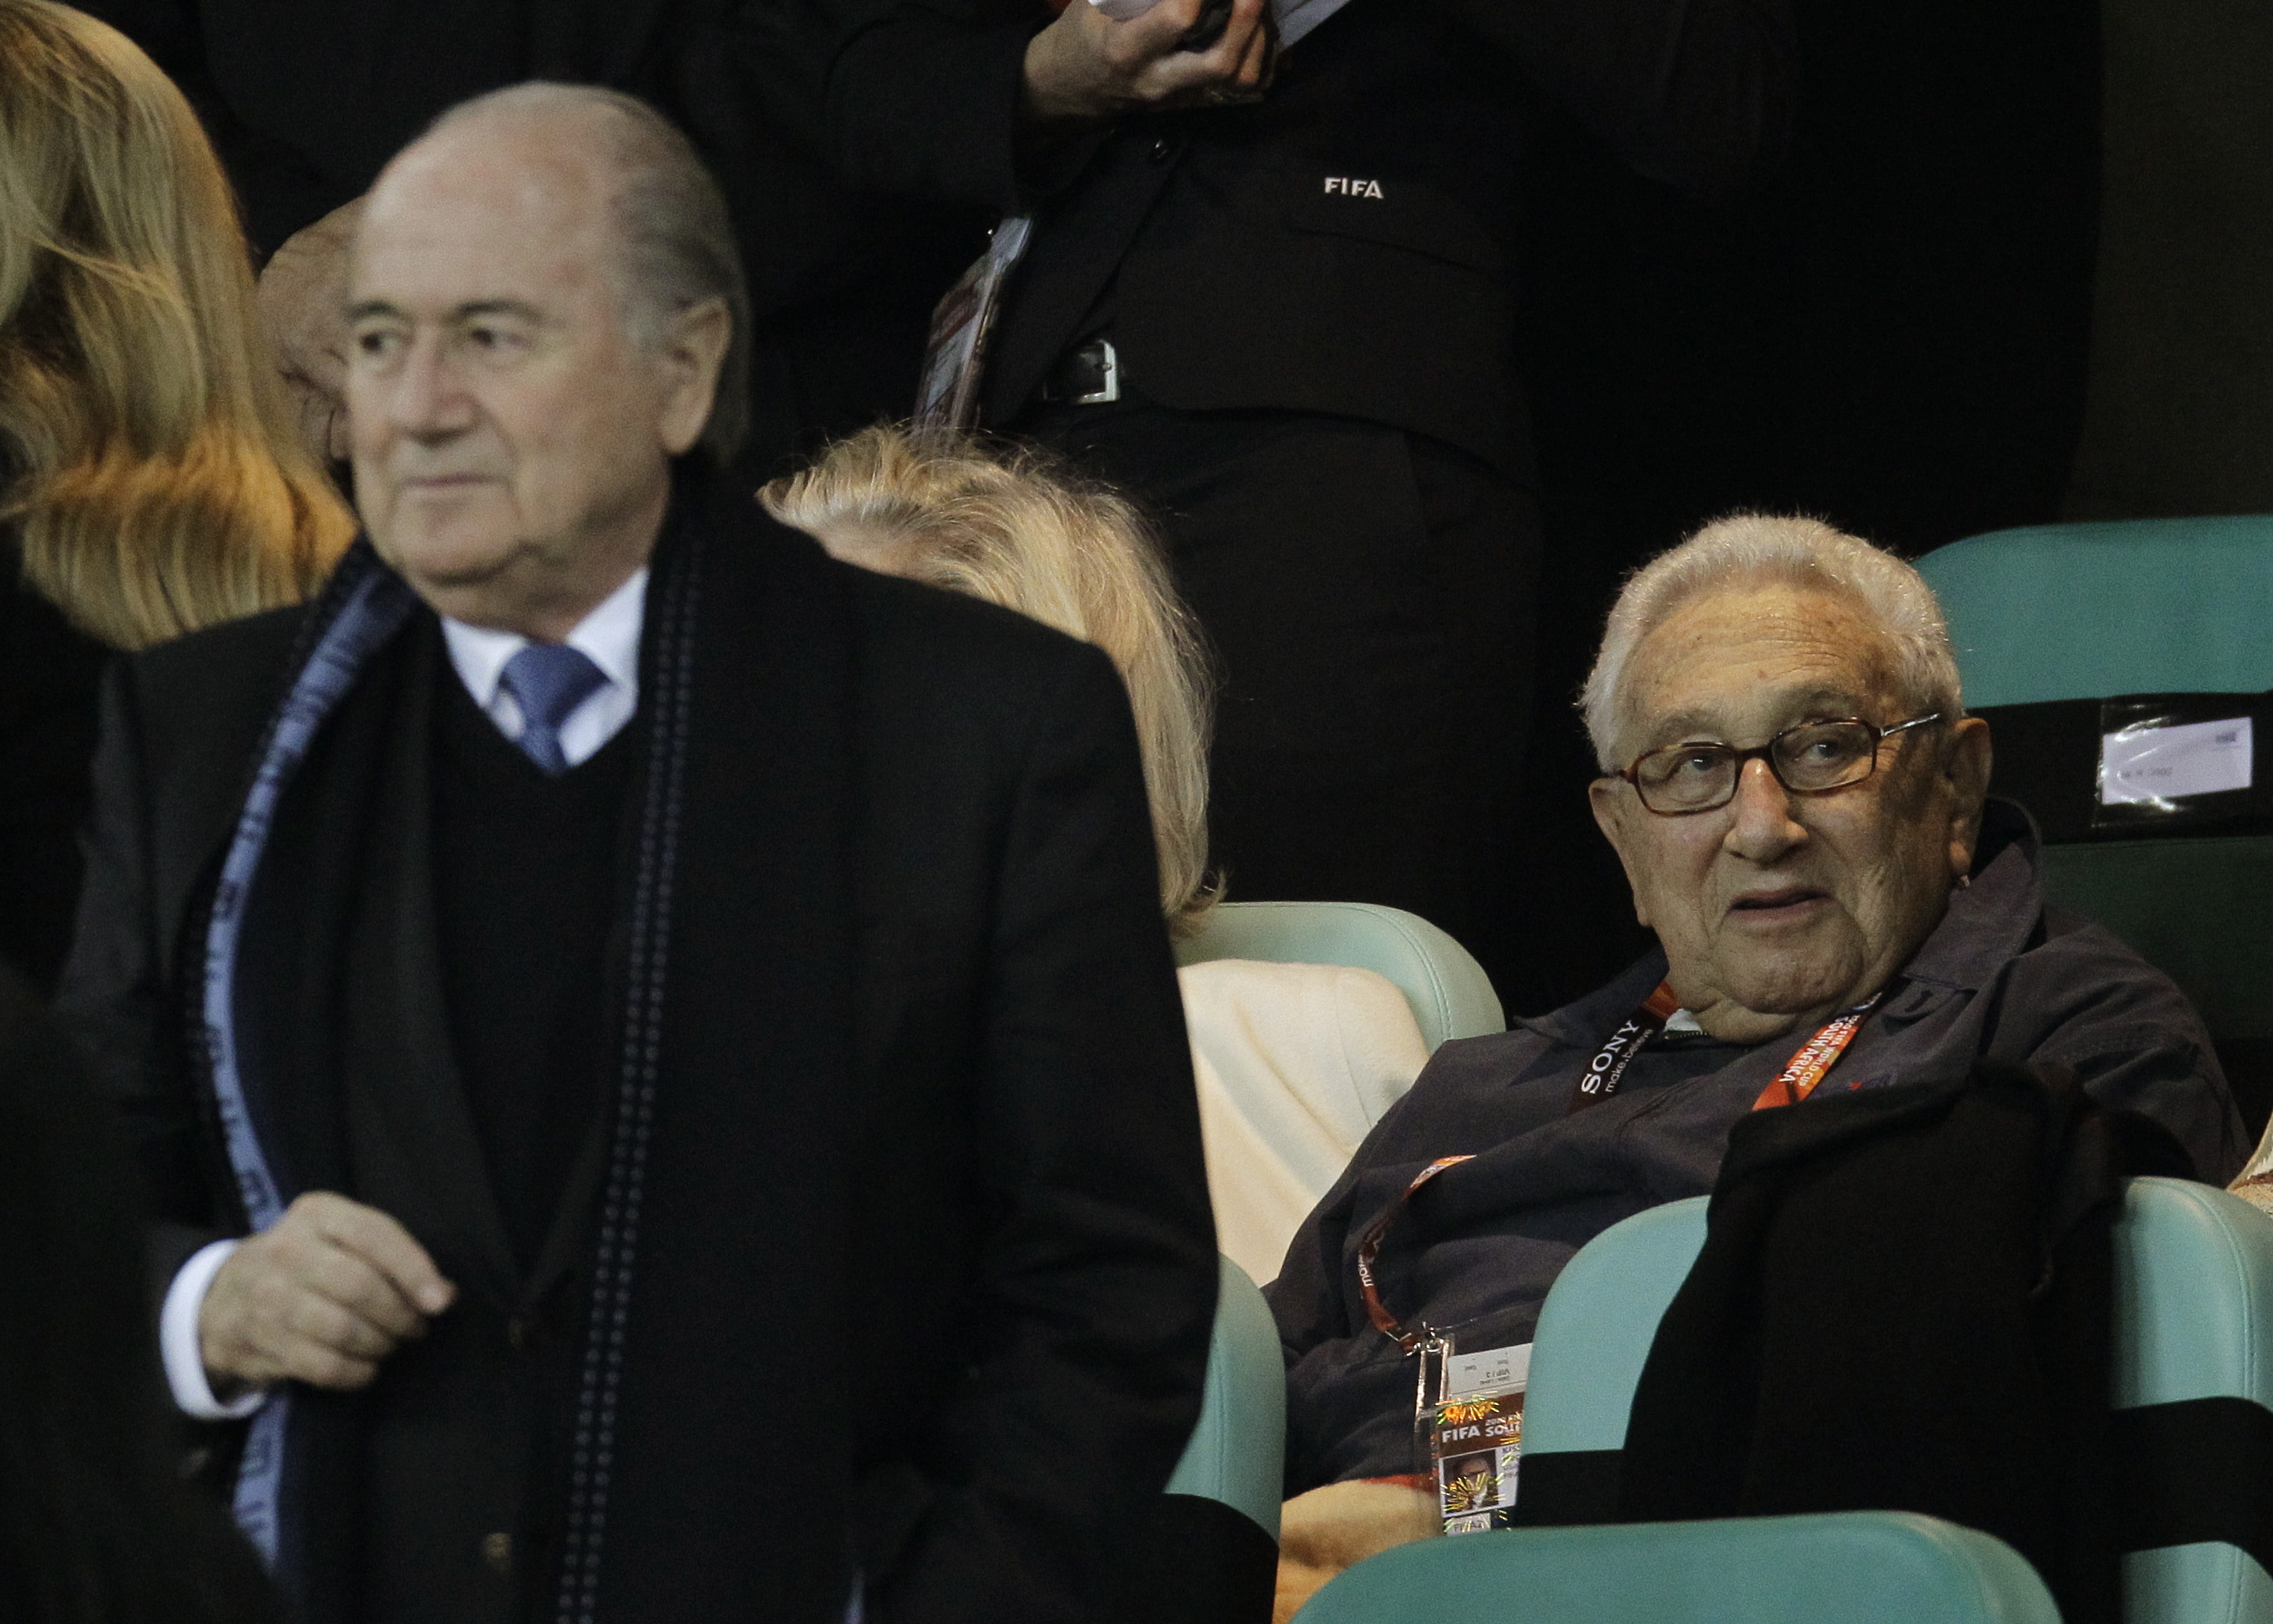 Henry Kissinger, Krig, fifa, Sepp Blatter